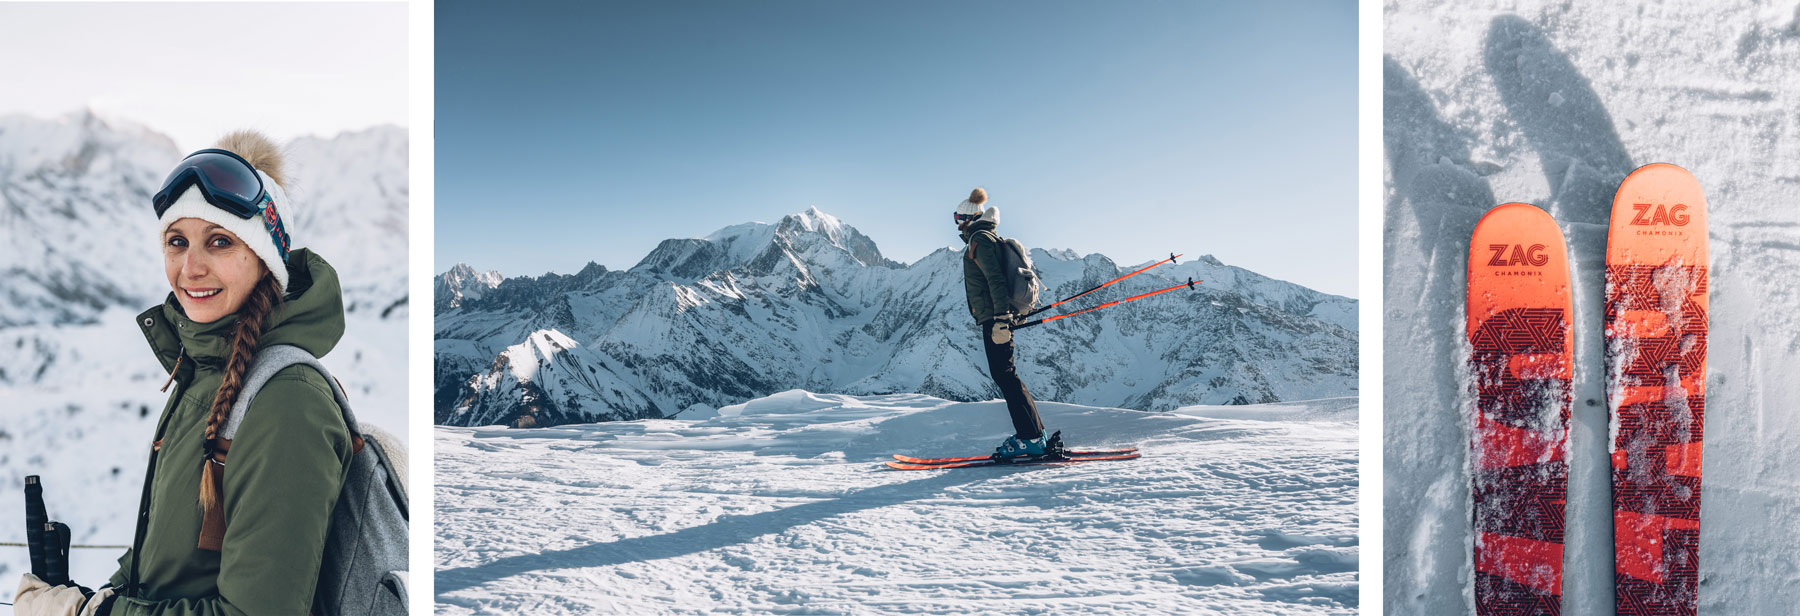 Skier face au Mont Blanc, St Gervais